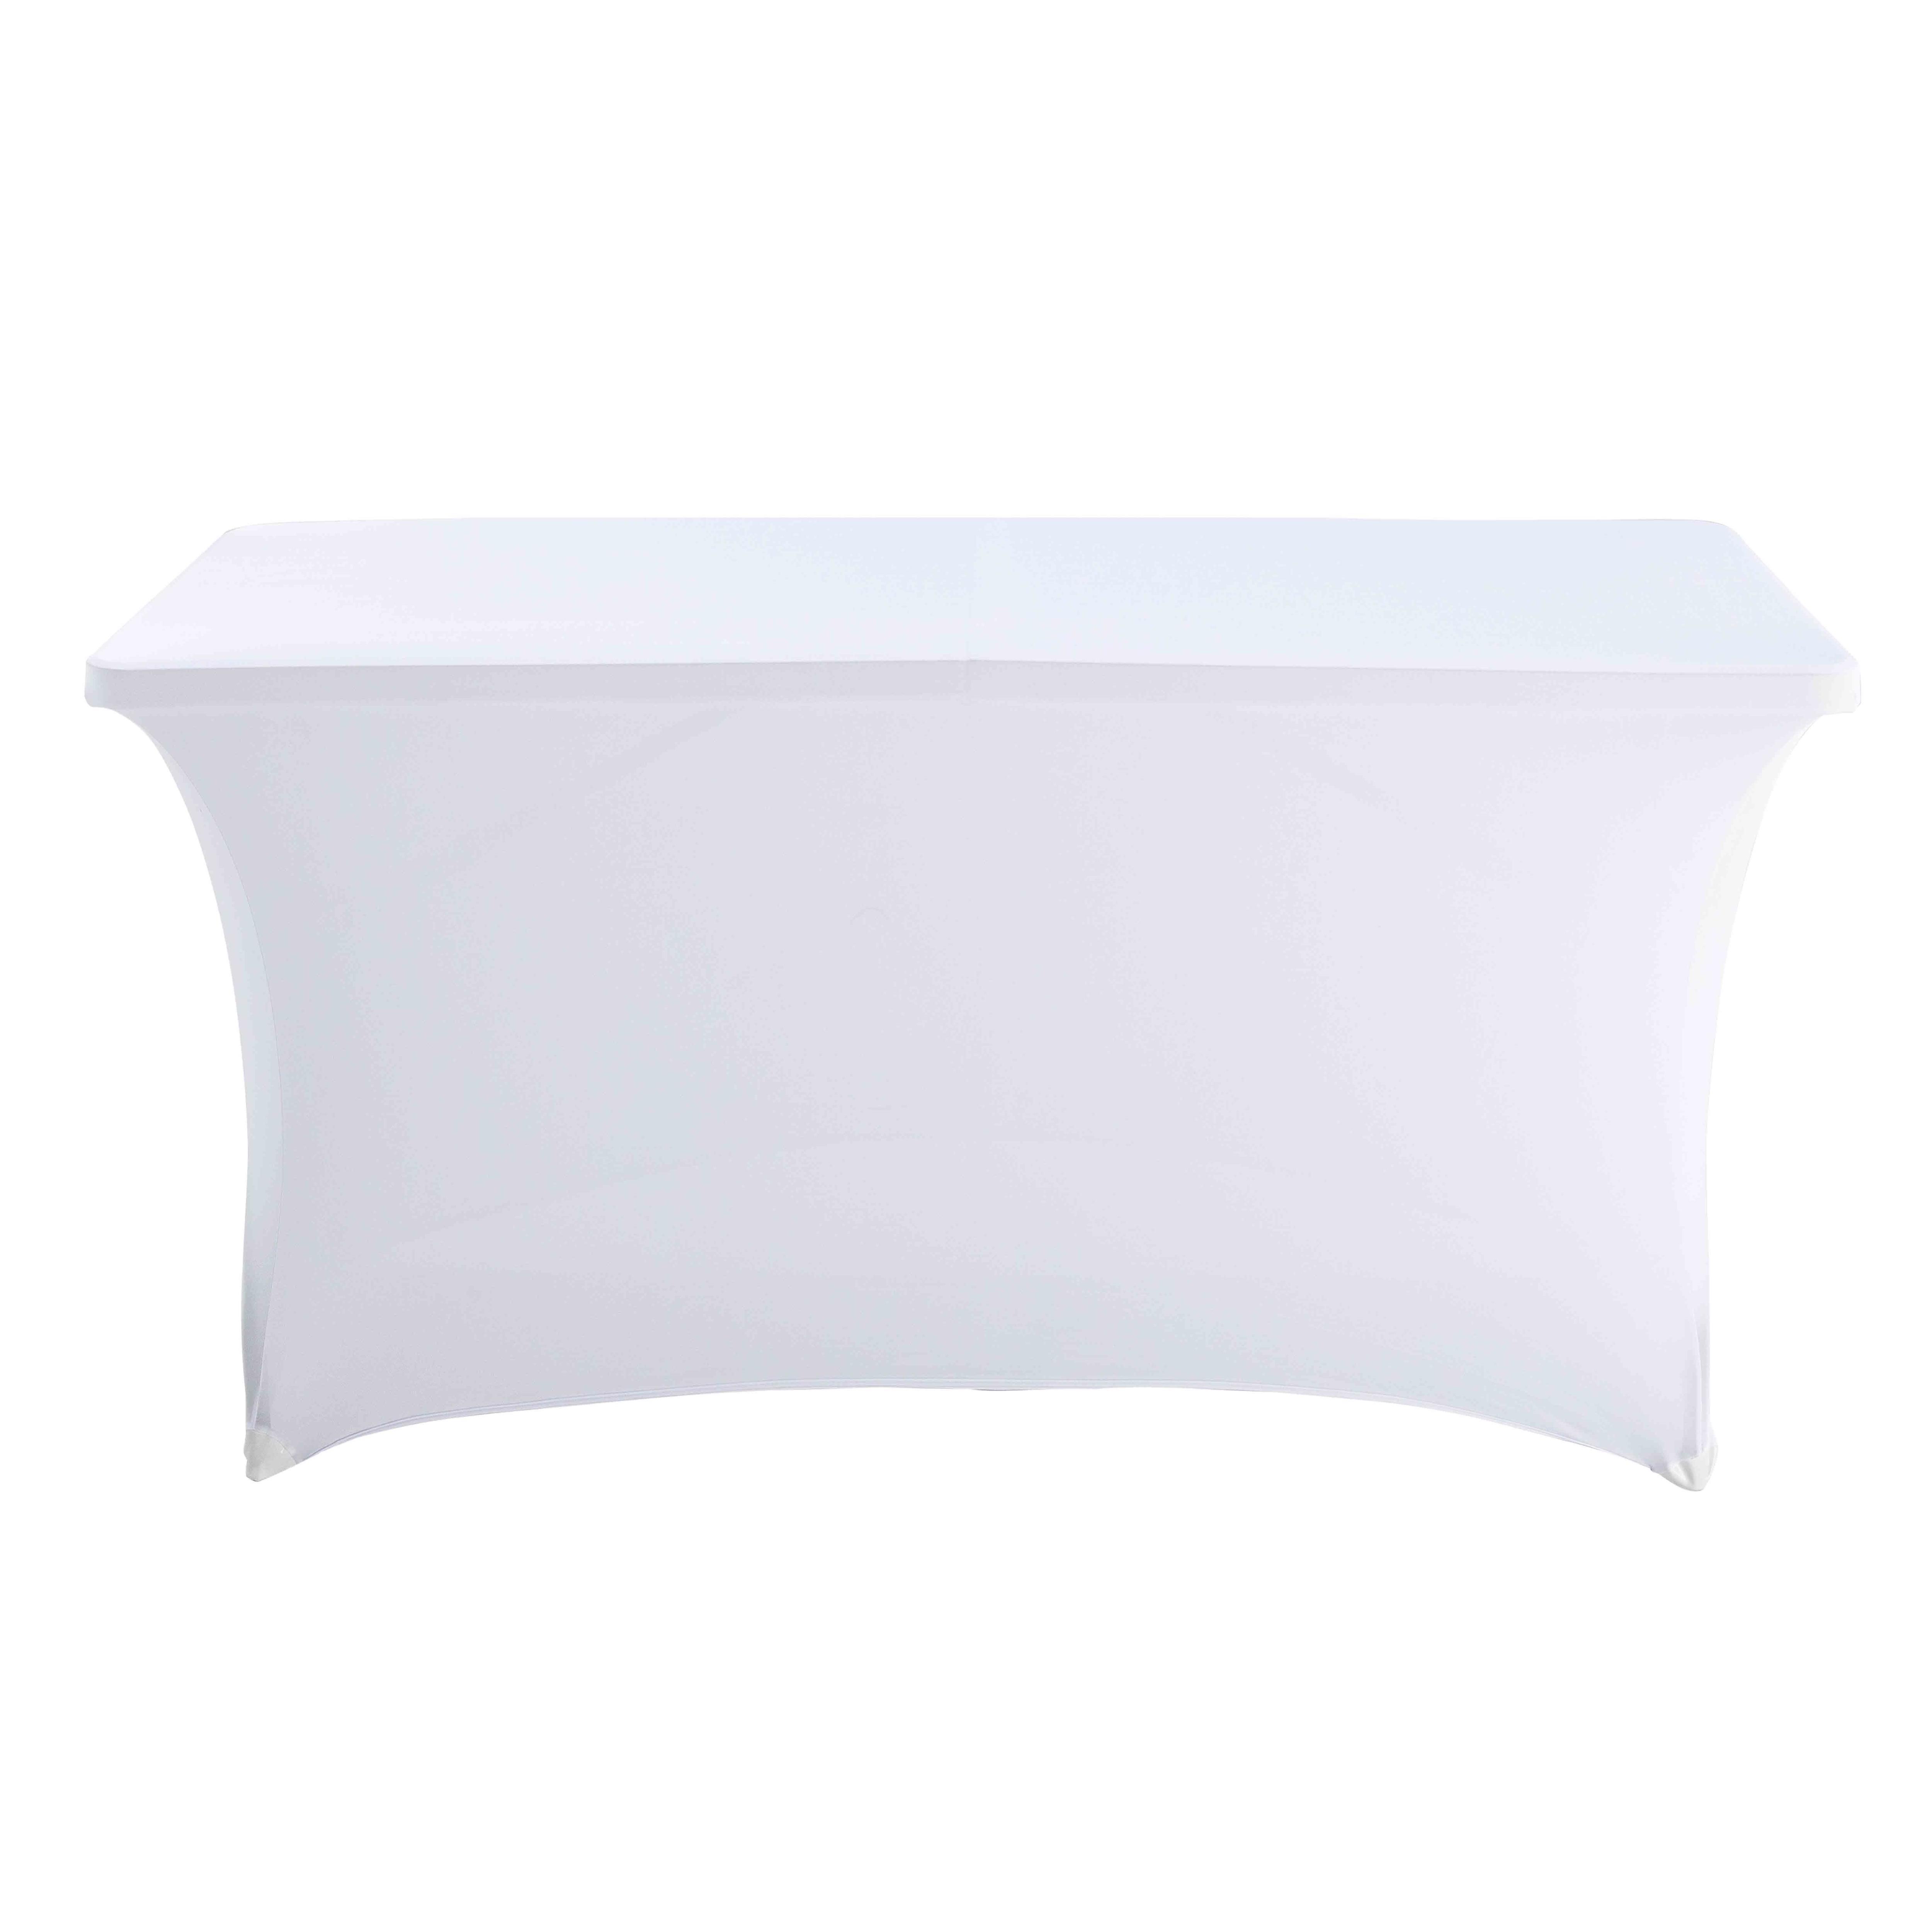 Housse Élastique Stretch Blanc Pour Table Pliante Hpde 180x75x74cm